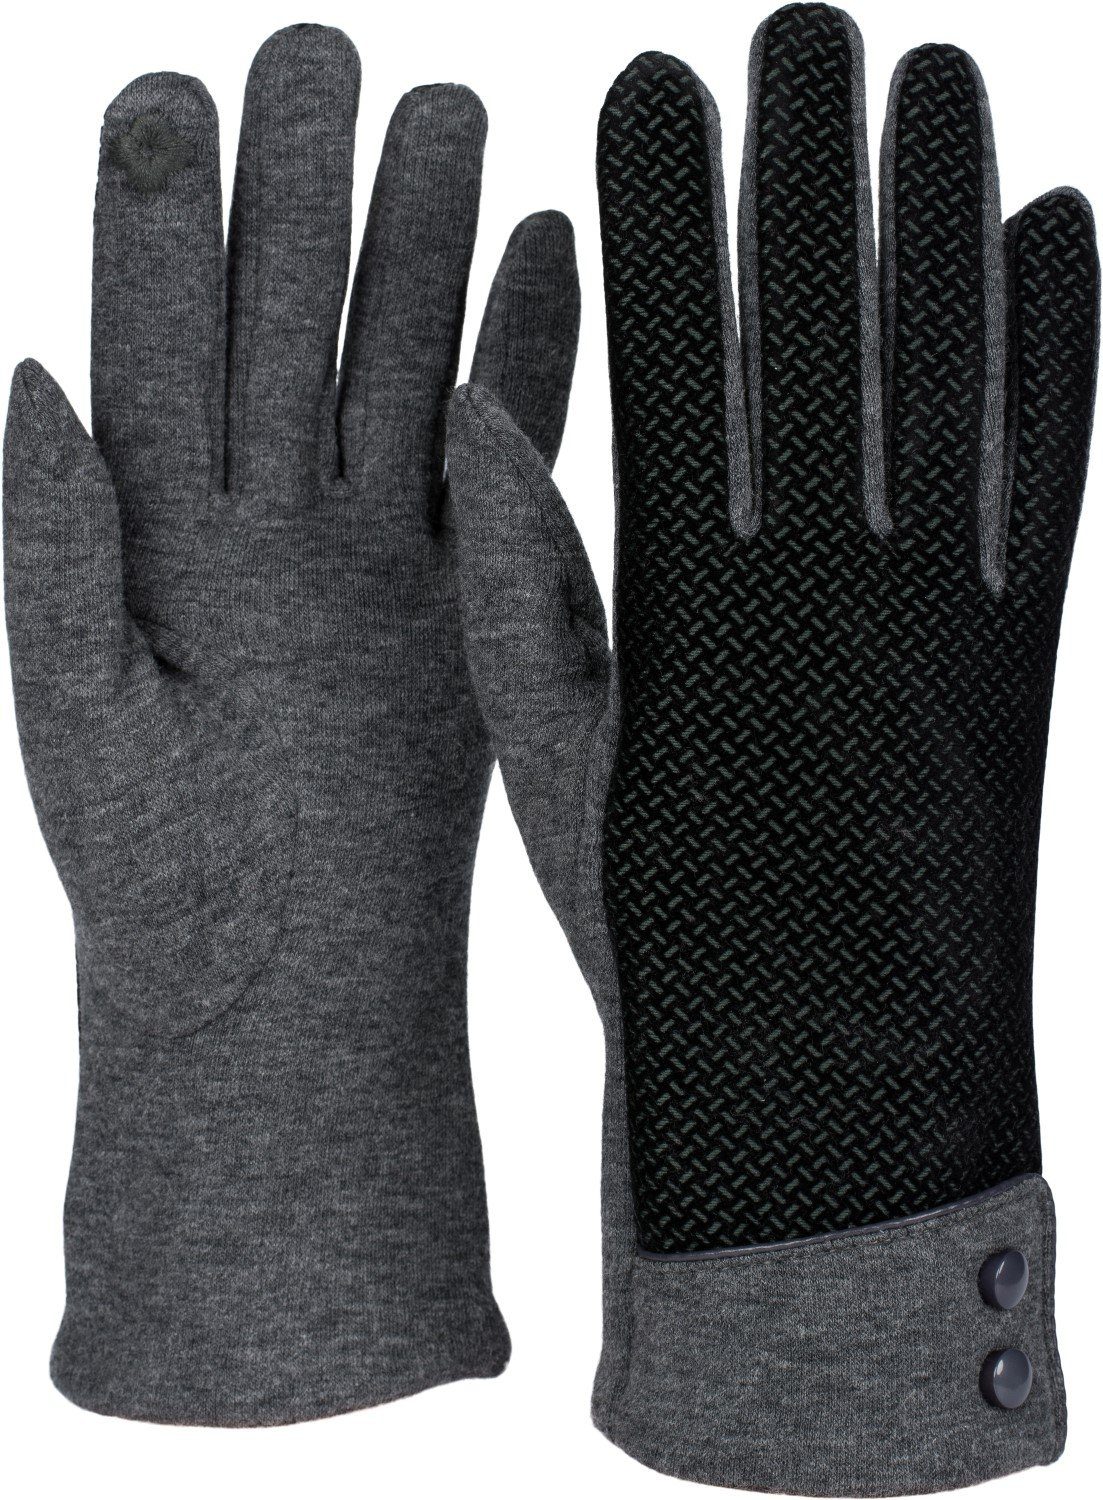 styleBREAKER Baumwollhandschuhe Touchscreen Handschuhe mit weichem Riffel Muster Grau